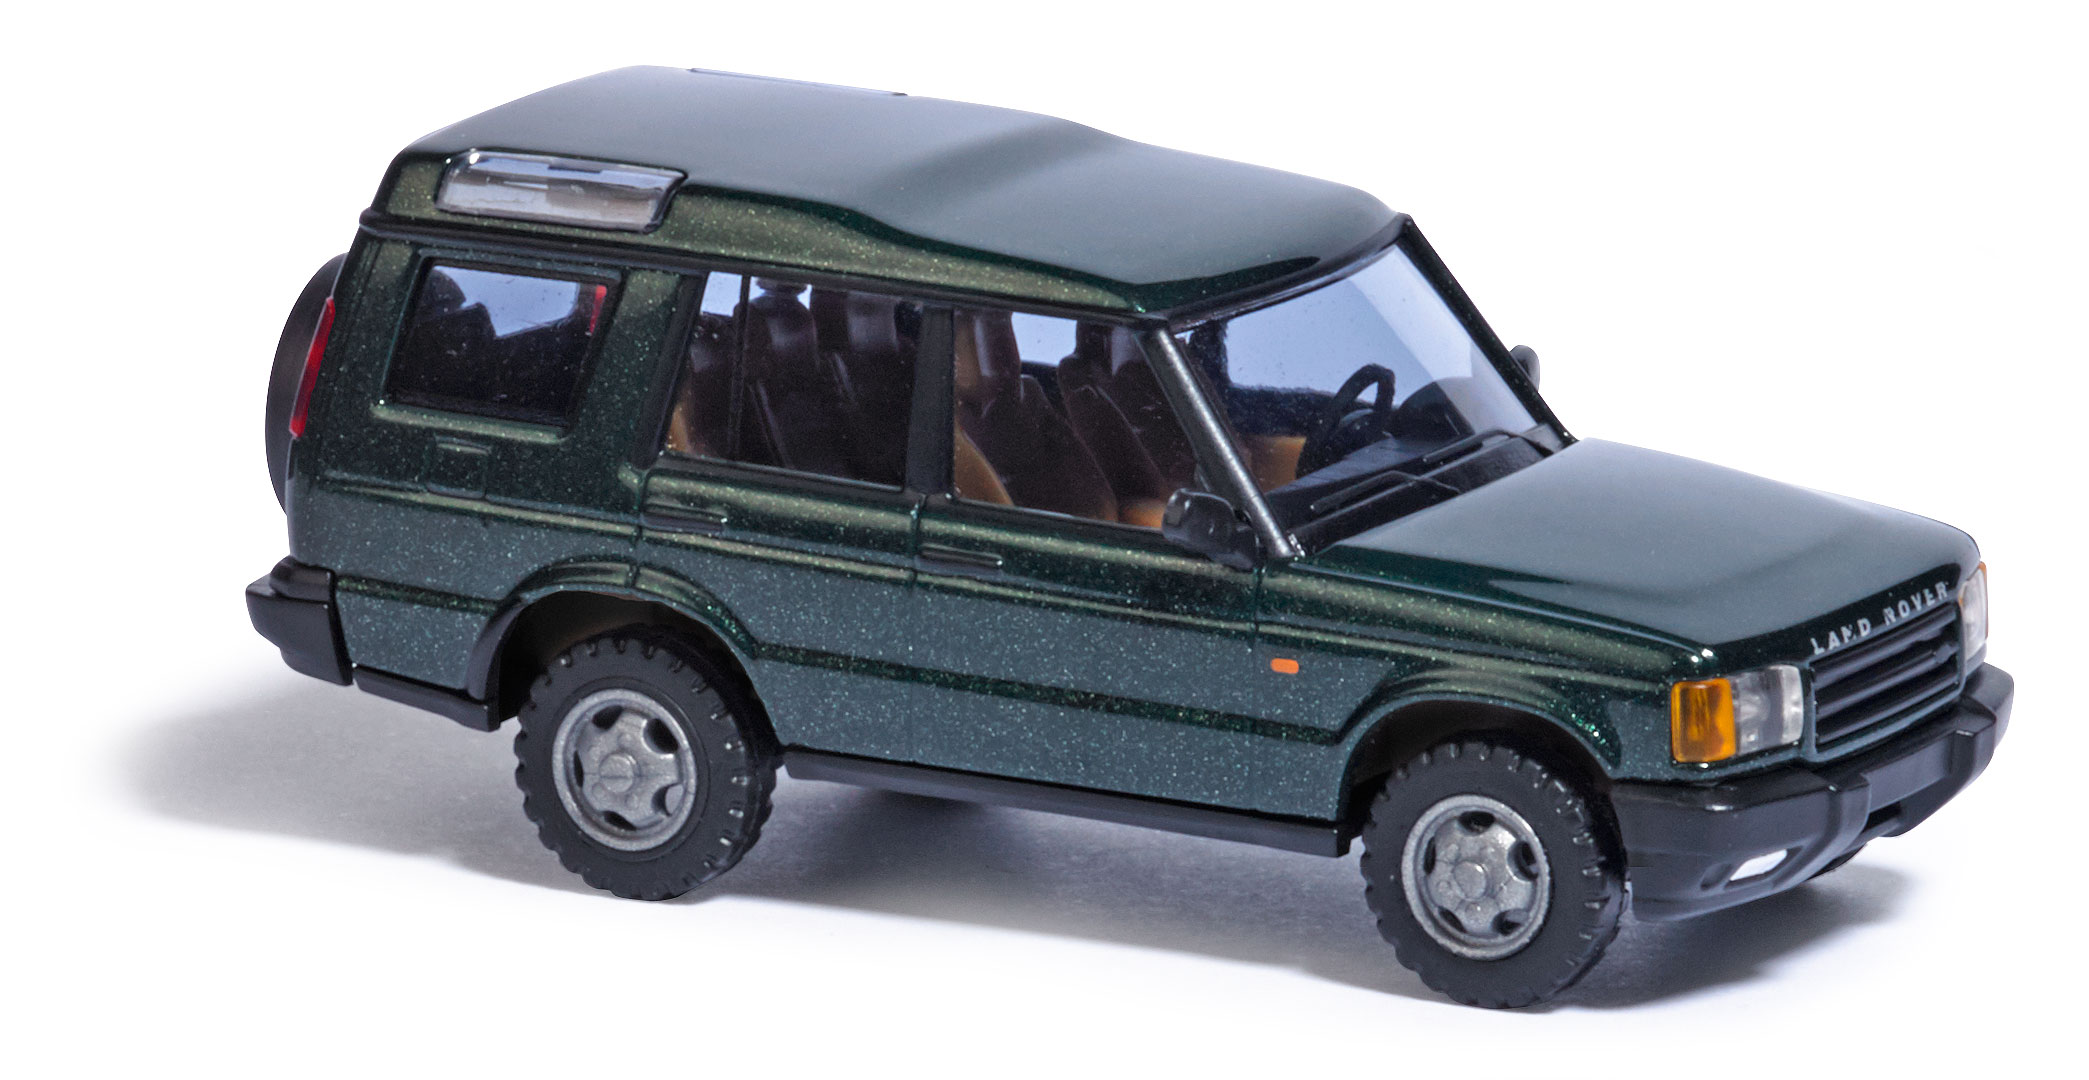 51901-Land Rover Discovery, Grün-4001738519013